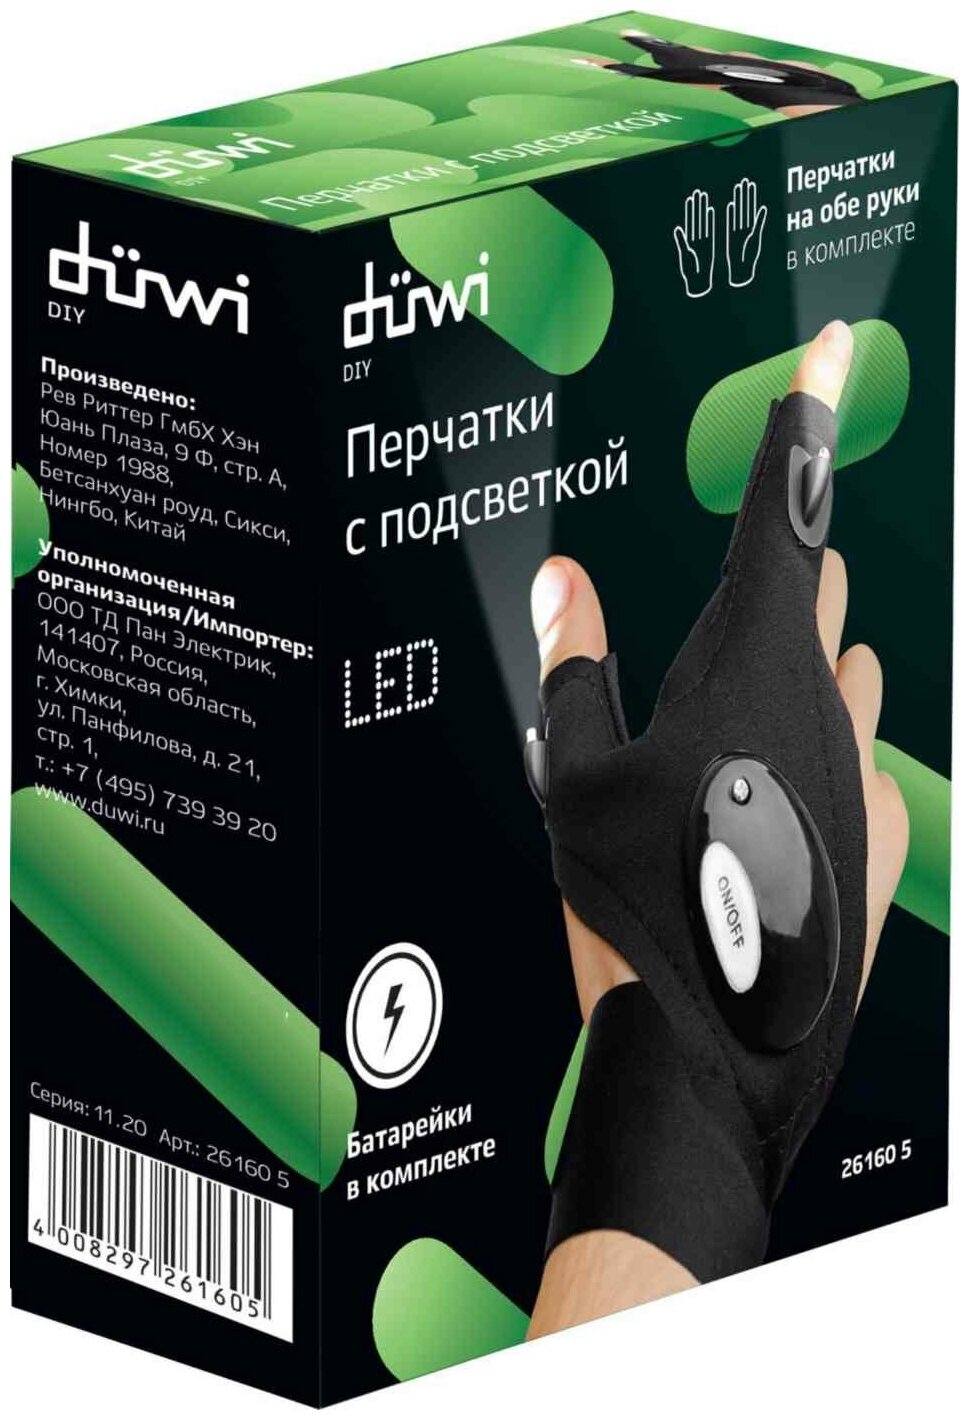 duwi Фонарь-перчатка со встроенной подсветкой, комплект 2 шт. на левую и правую руку, 26160 5 - фотография № 8